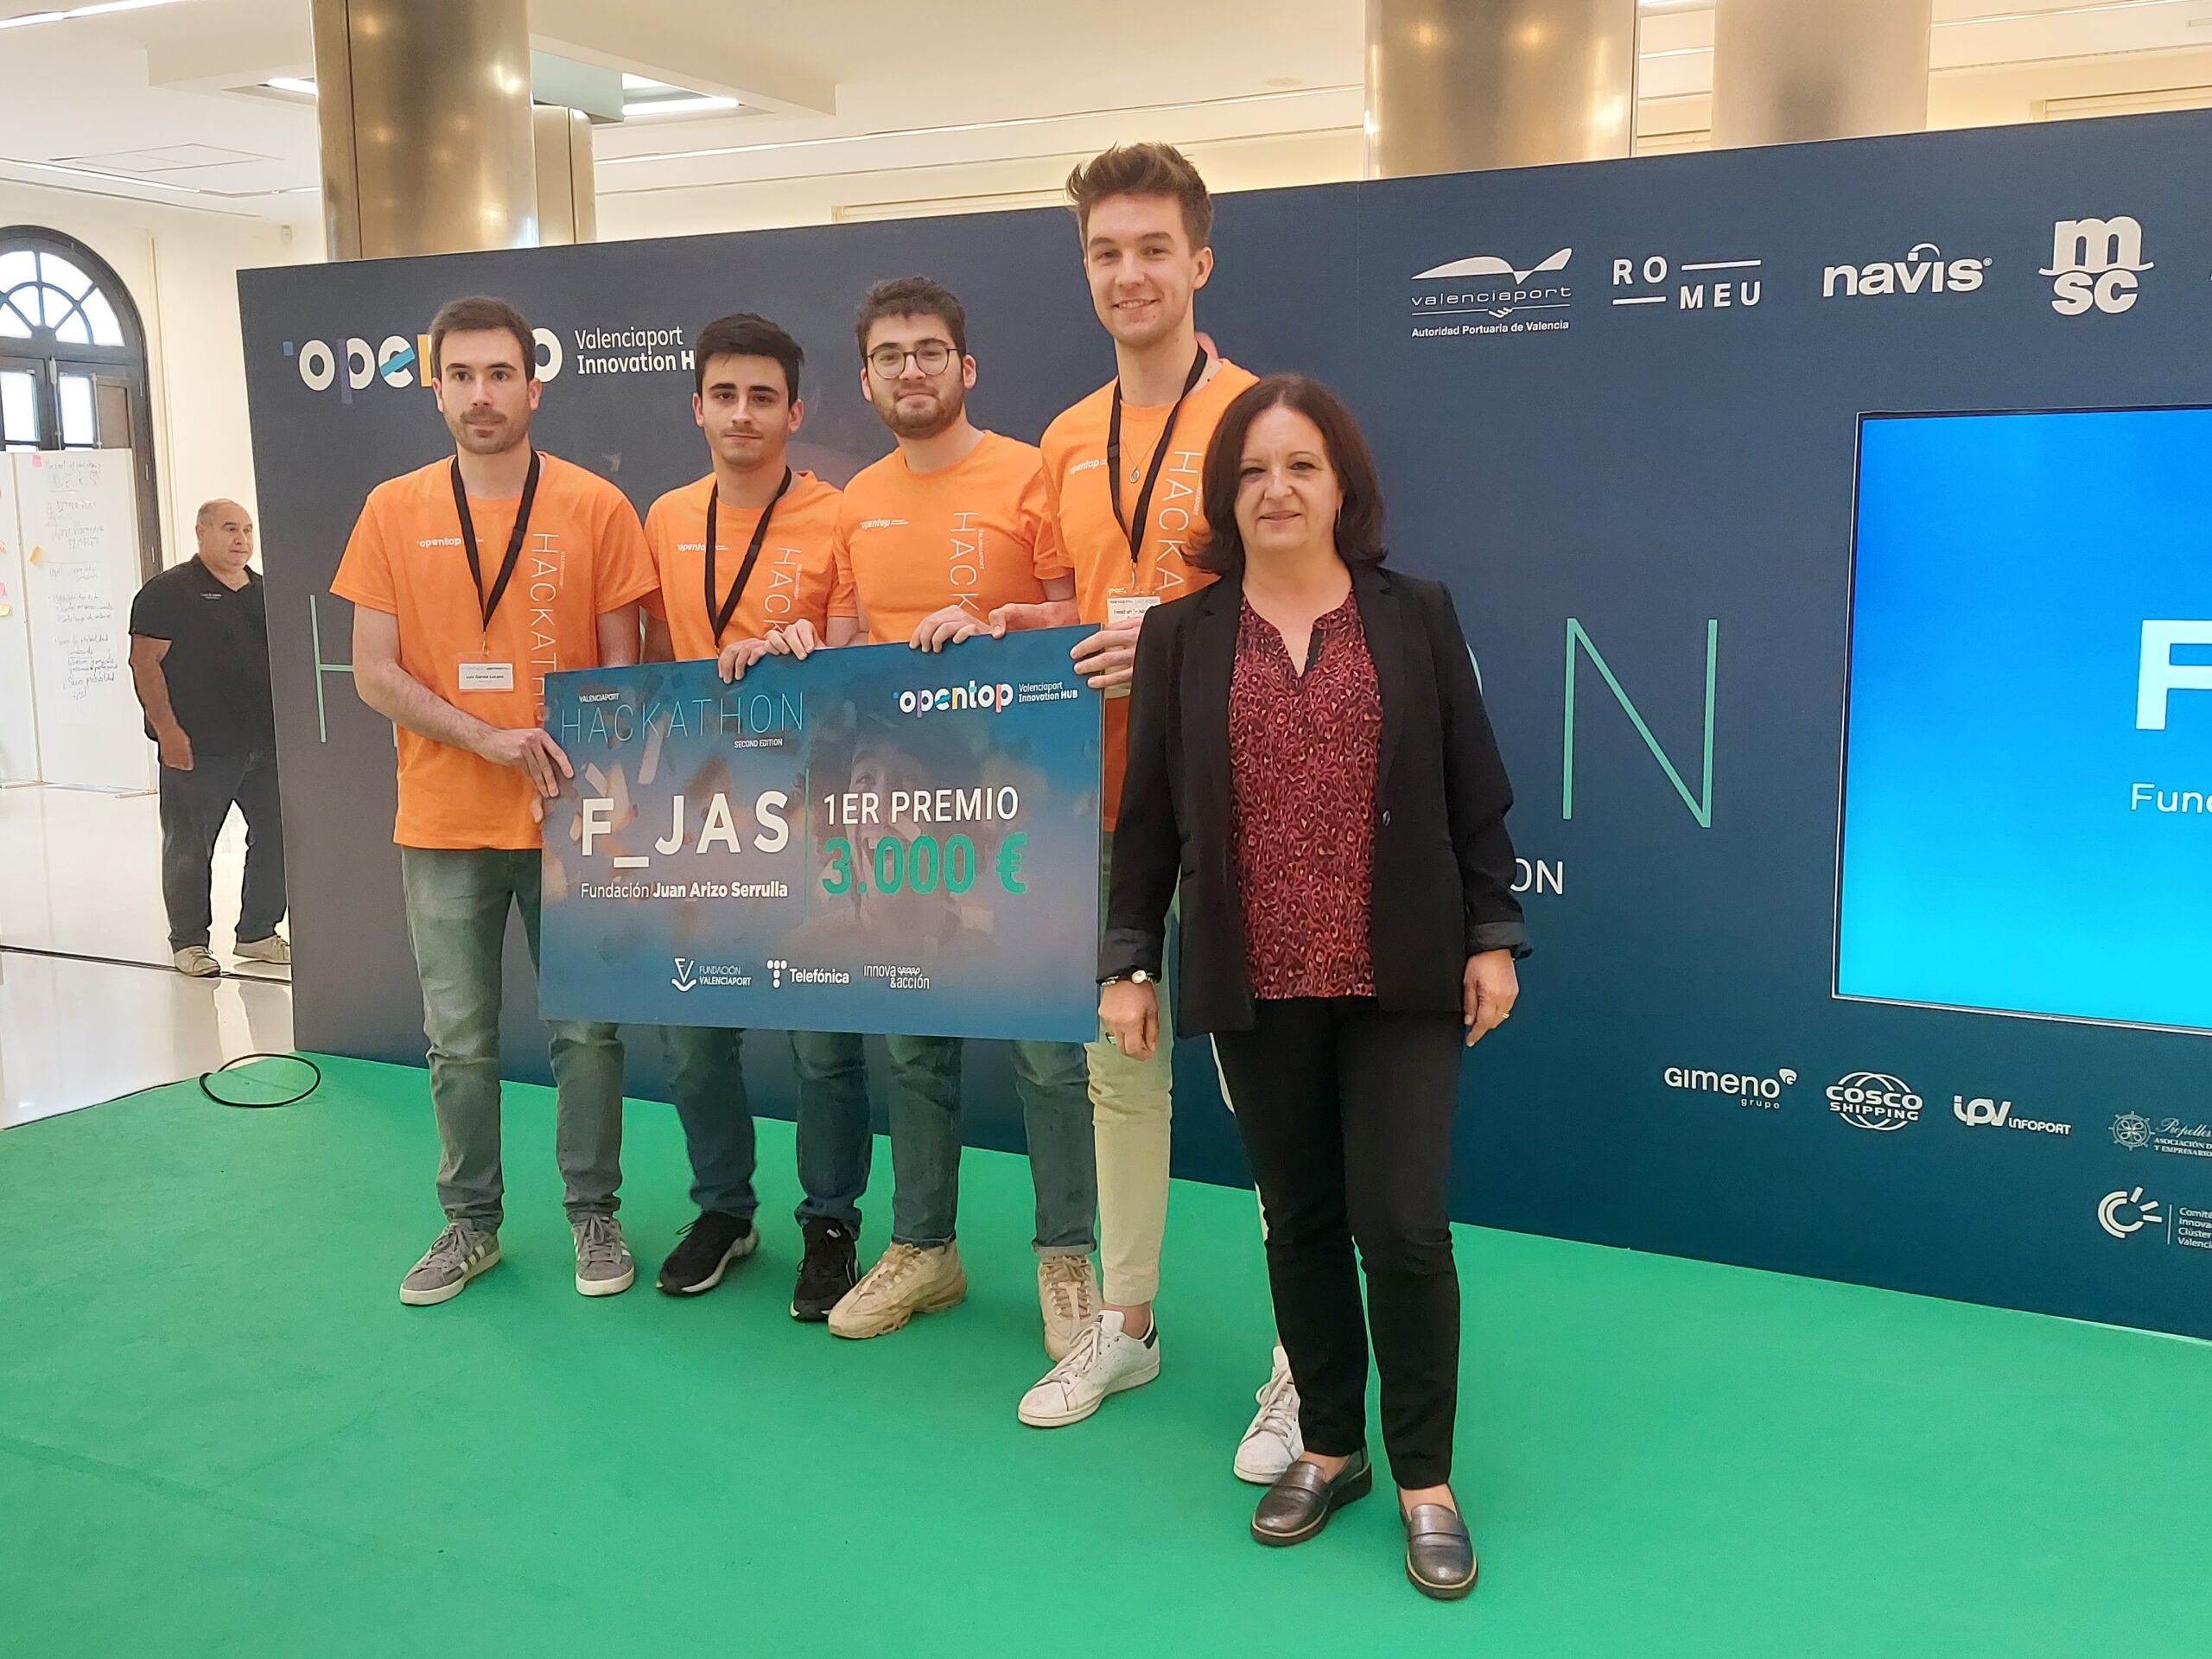 La Fundación Juan Arizo premia con 3.000€ a “Tostimizer”, proyecto ganador del II Valenciaport Hackathon